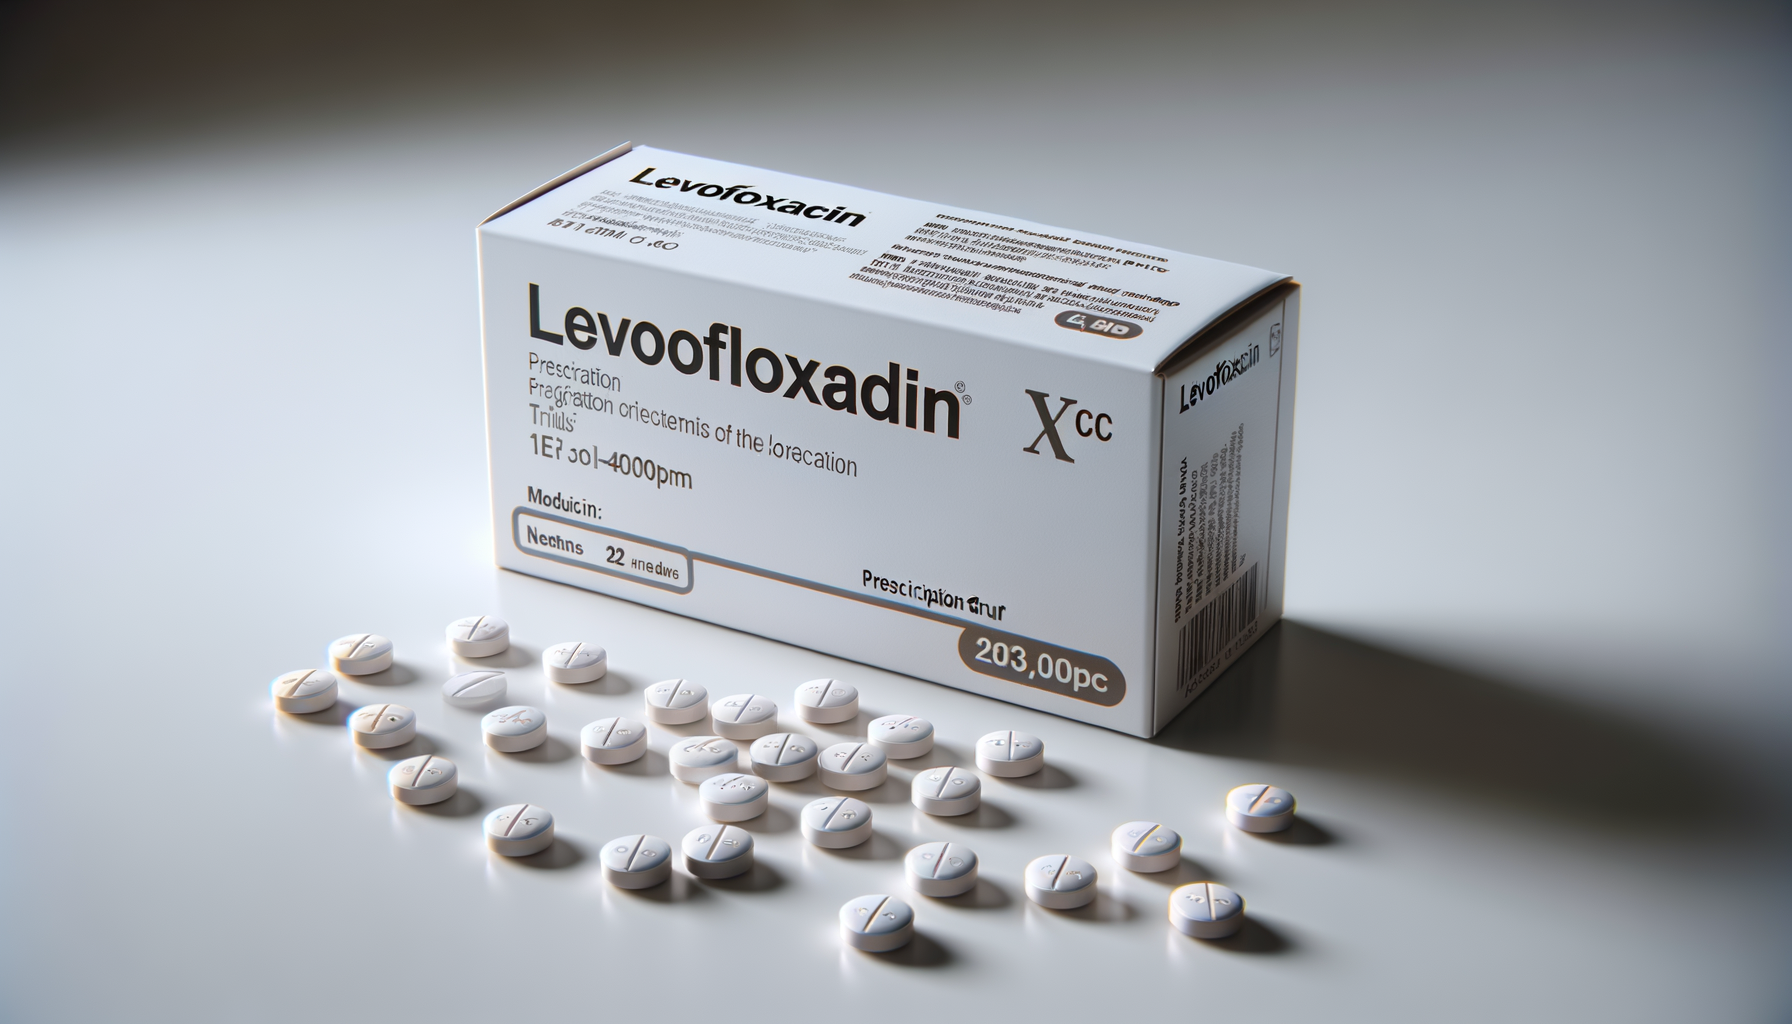 Per che cosa è usata la levofloxacina?